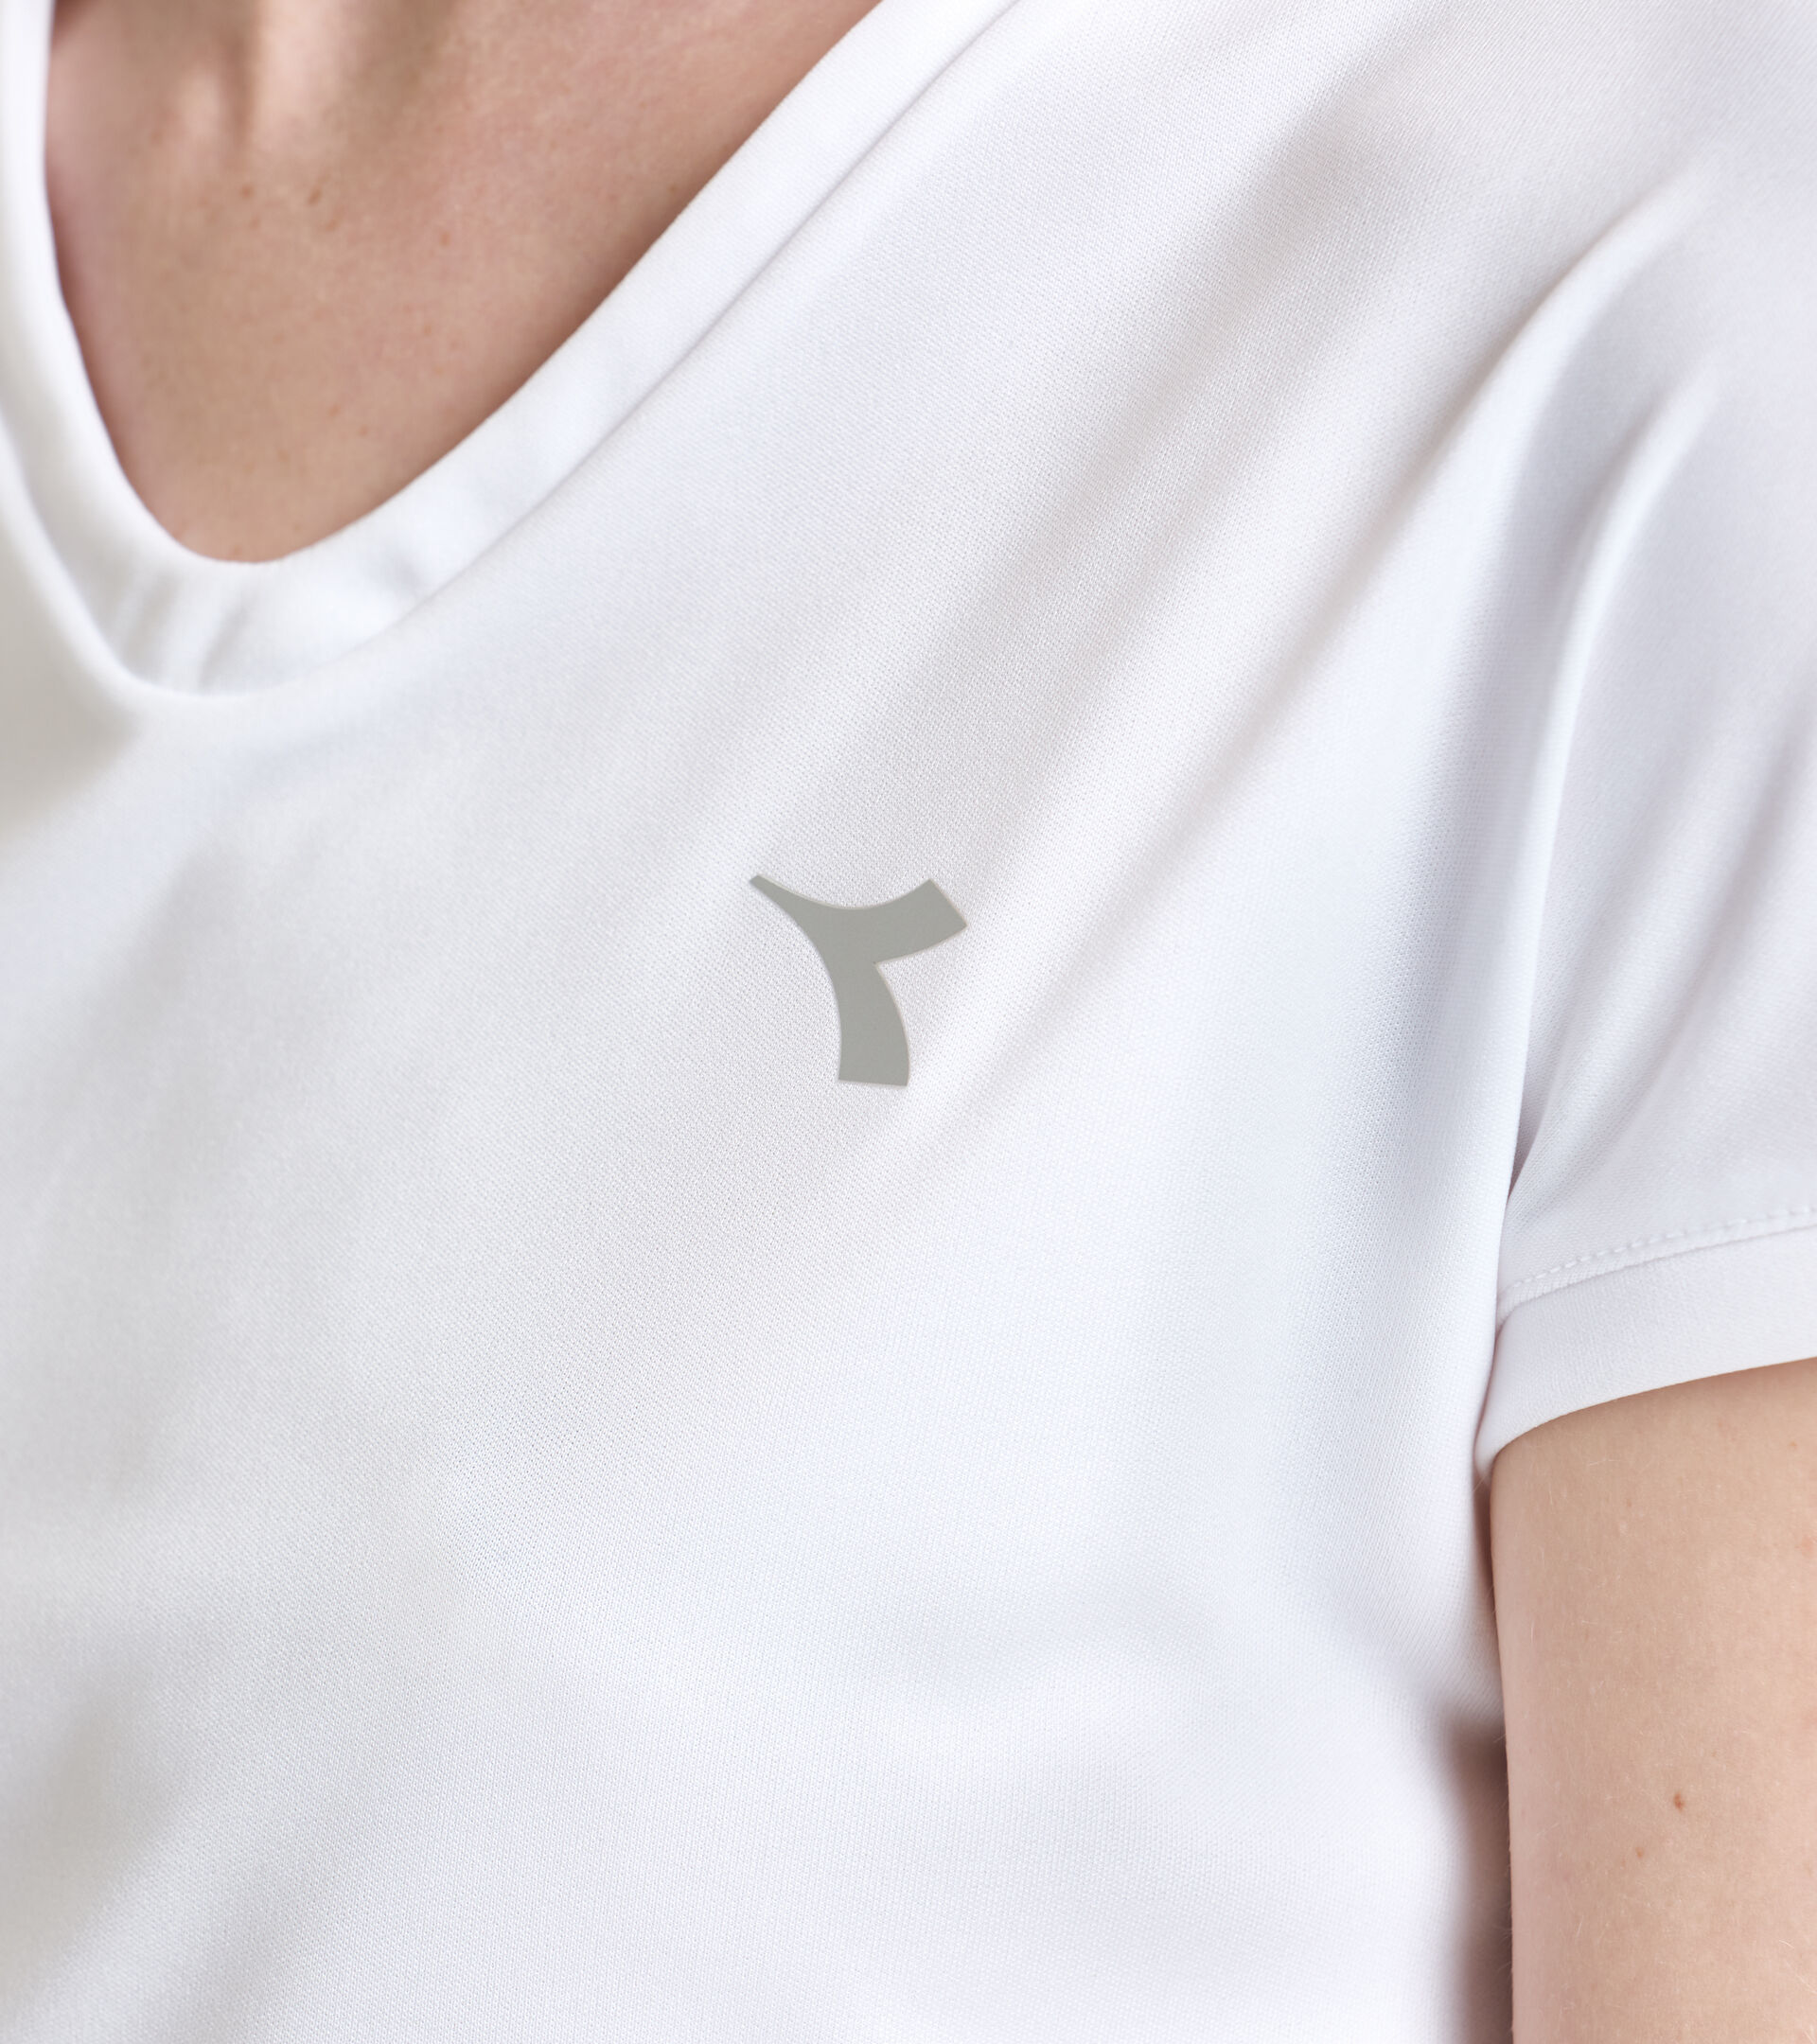 Tennis T-shirt - Women L. T-SHIRT TEAM OPTICAL WHITE - Diadora